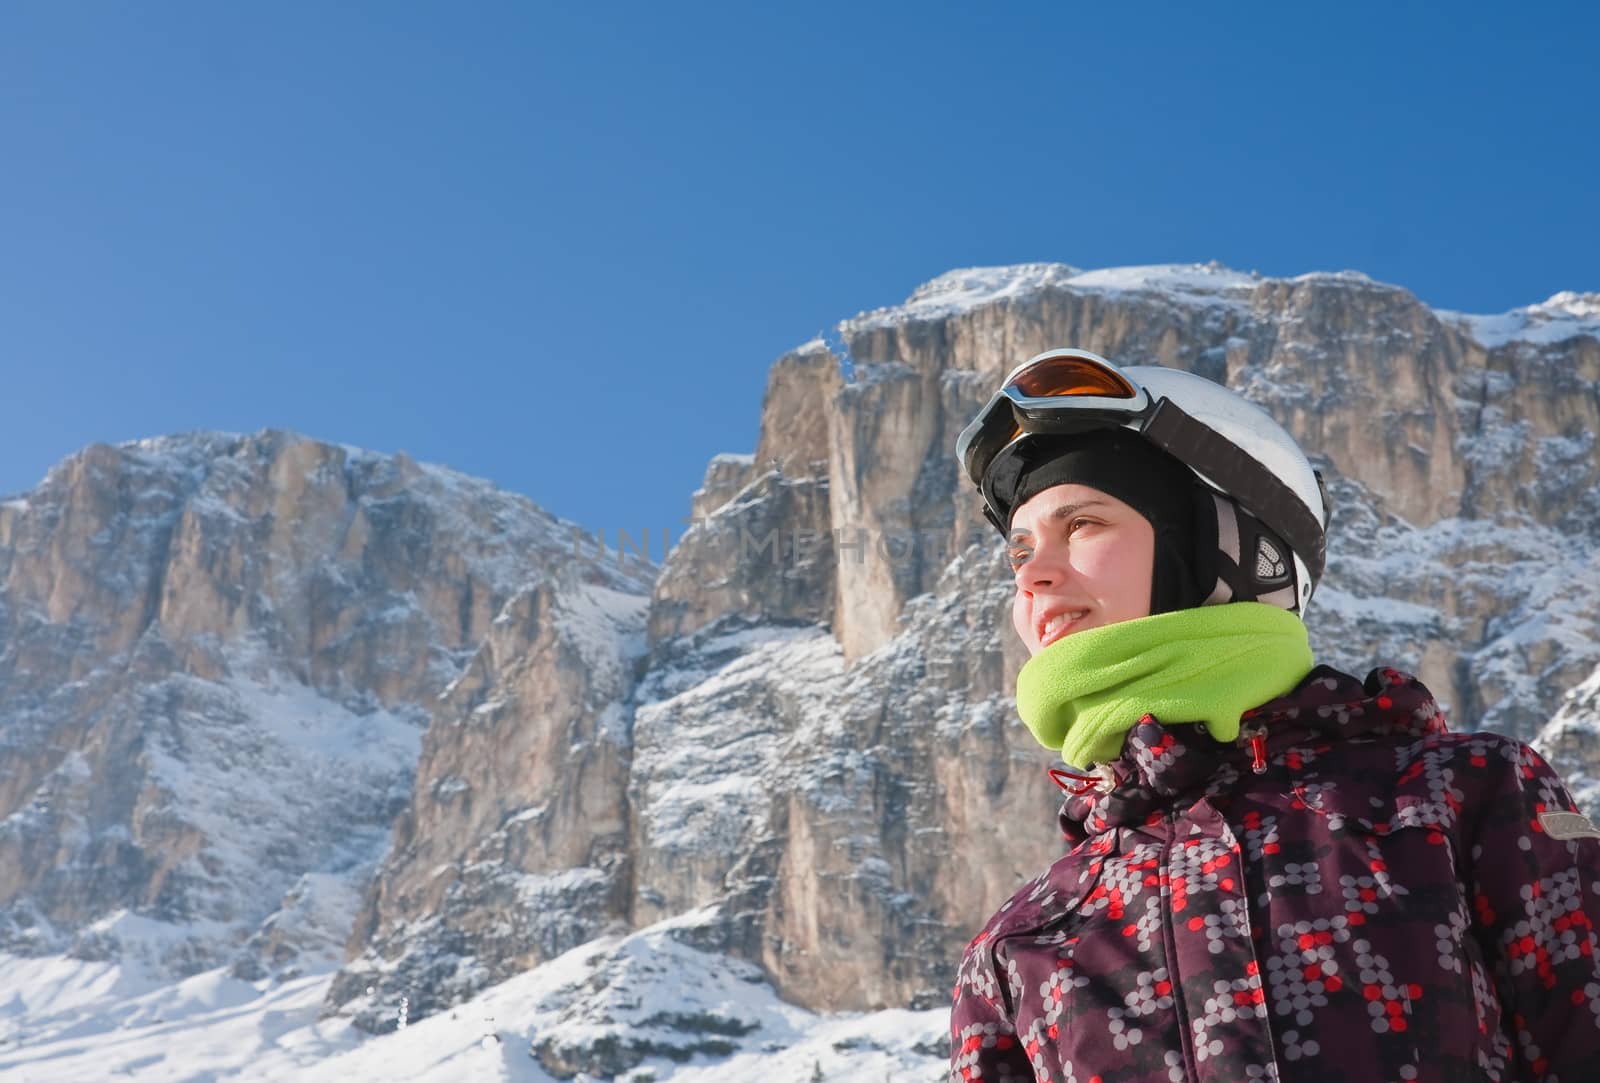 Portrait alpine skier. Ski resort of Selva di Val Gardena, Italy by nikolpetr